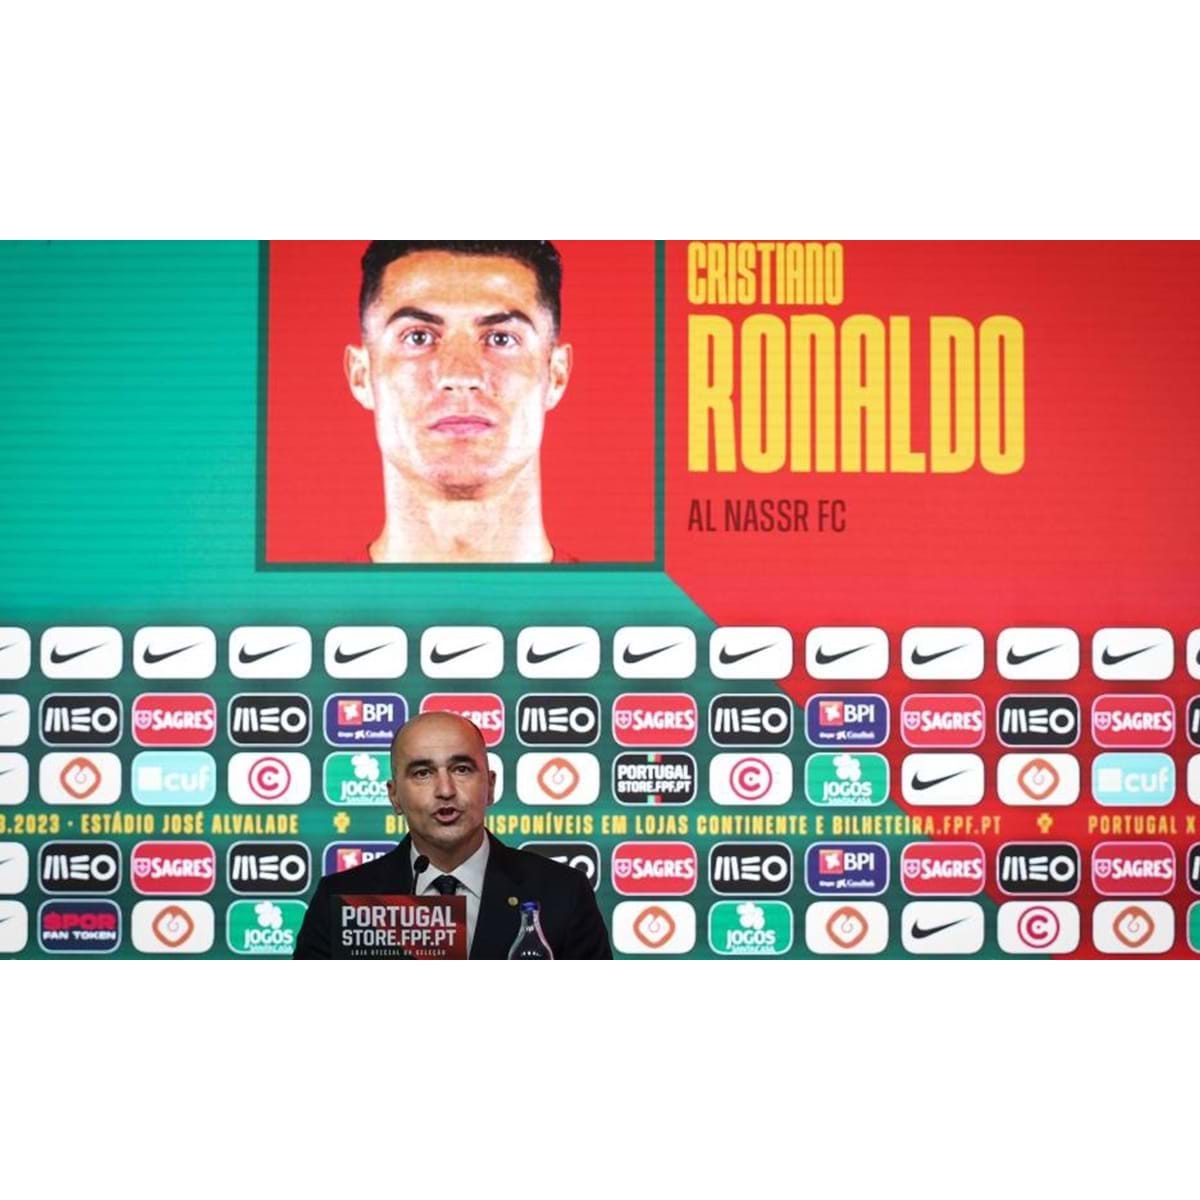 Eis os convocados de Roberto Martínez para os próximos jogos de Portugal